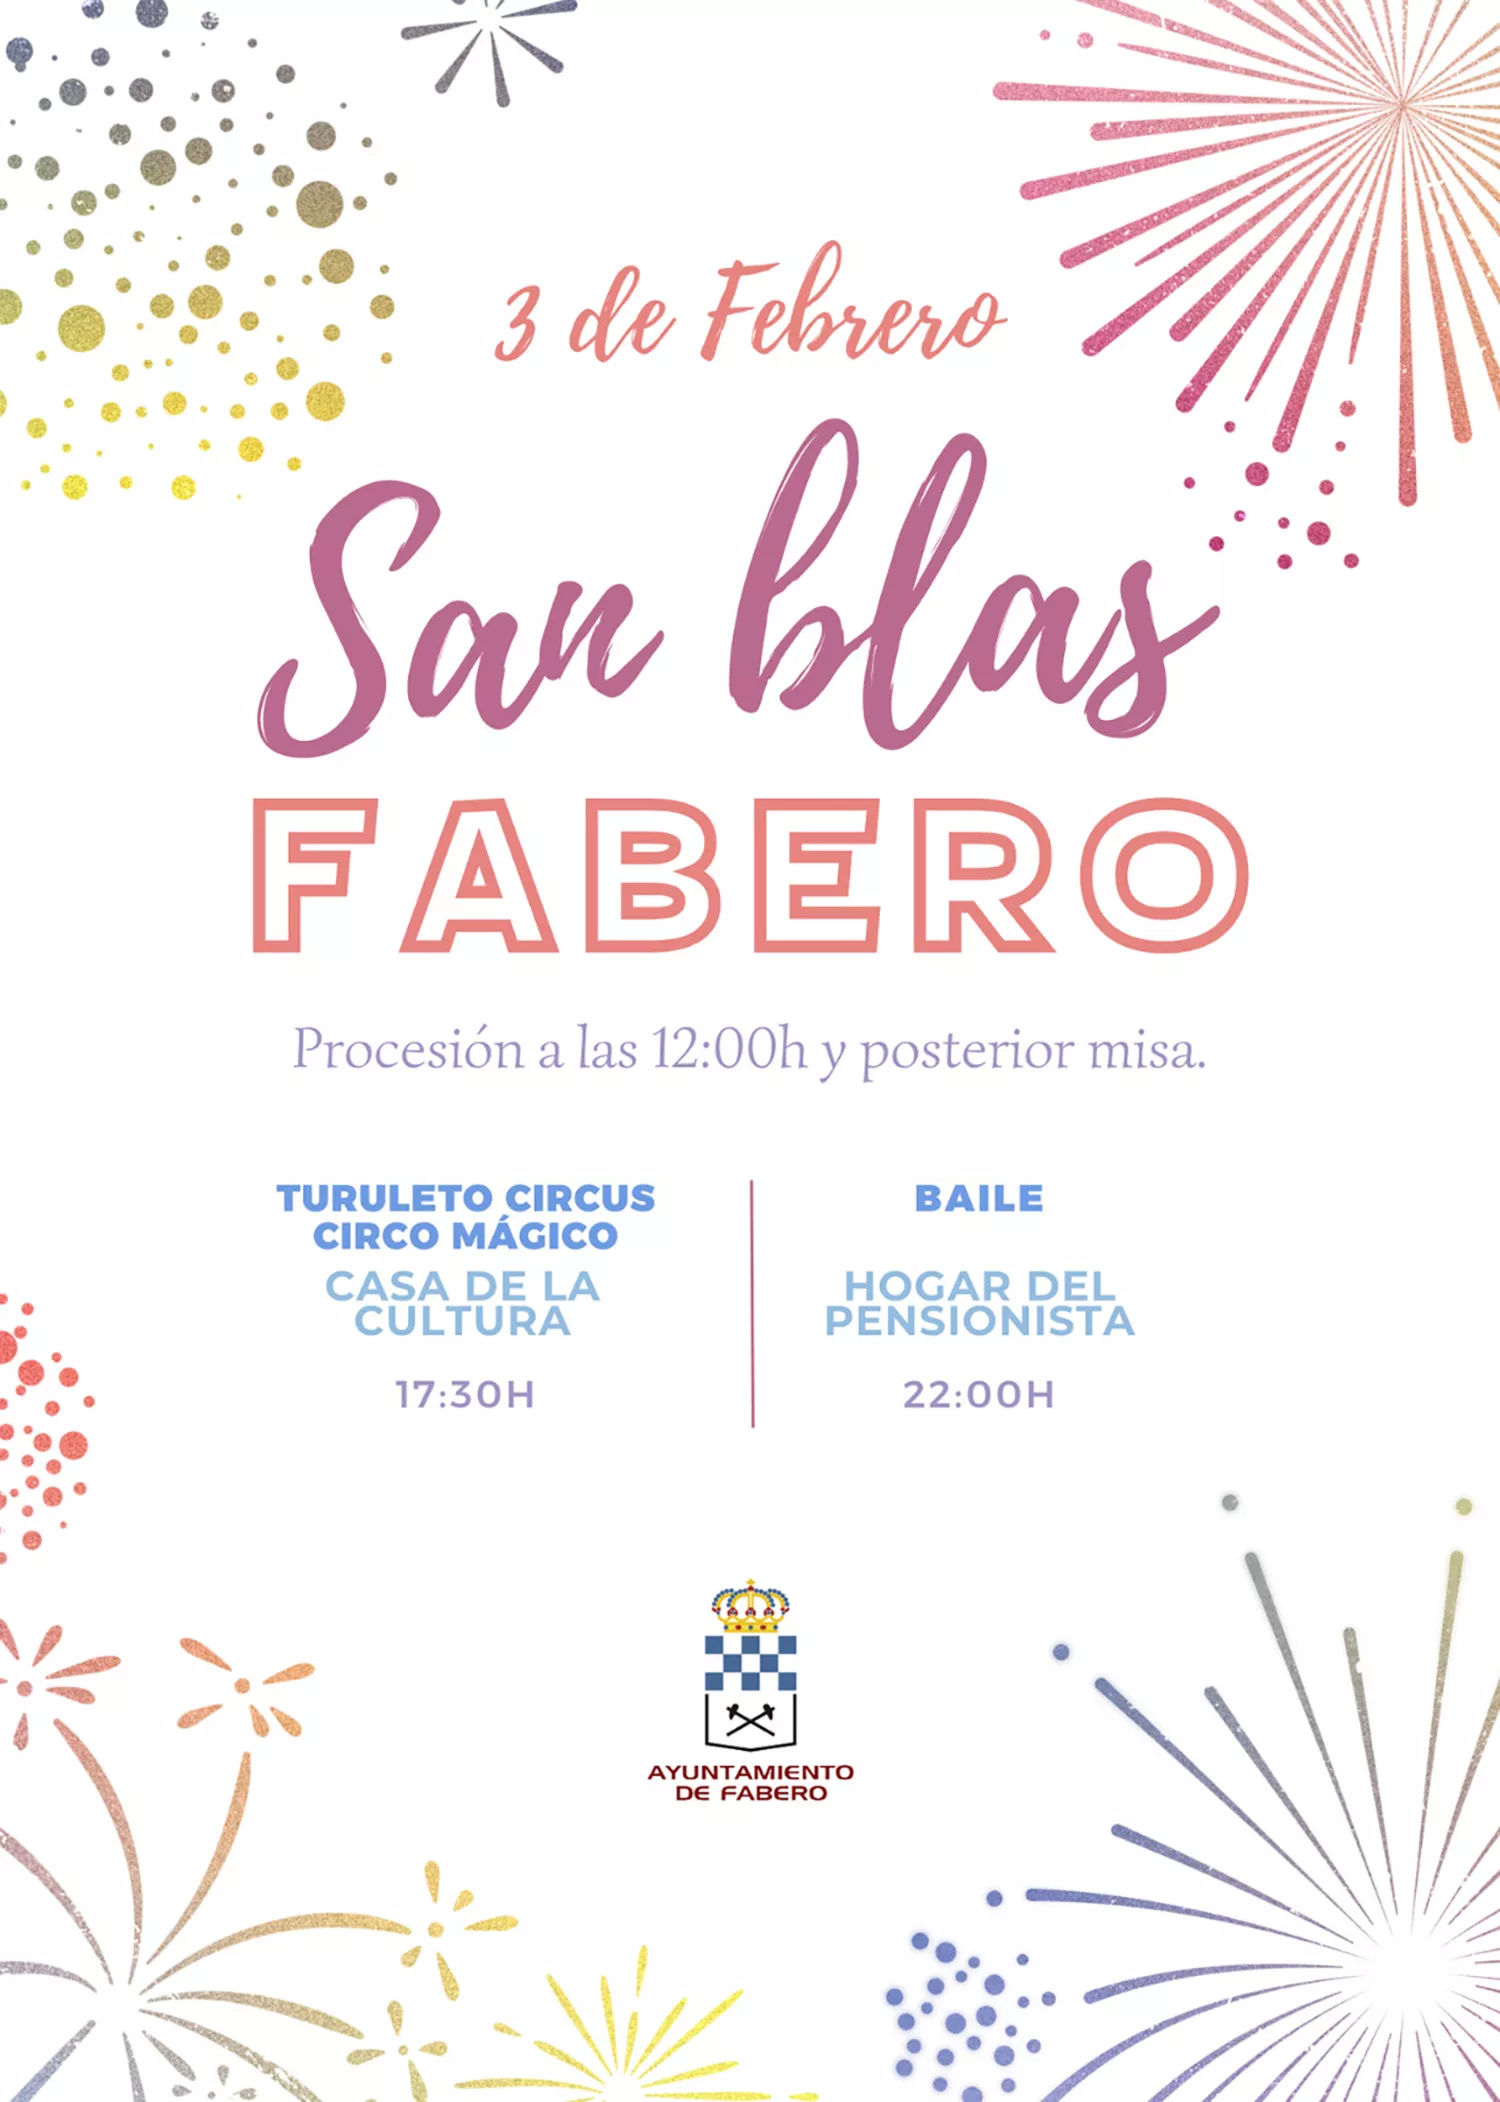 Fabero celebra su fiesta en honor a San Blas con un circo y baile